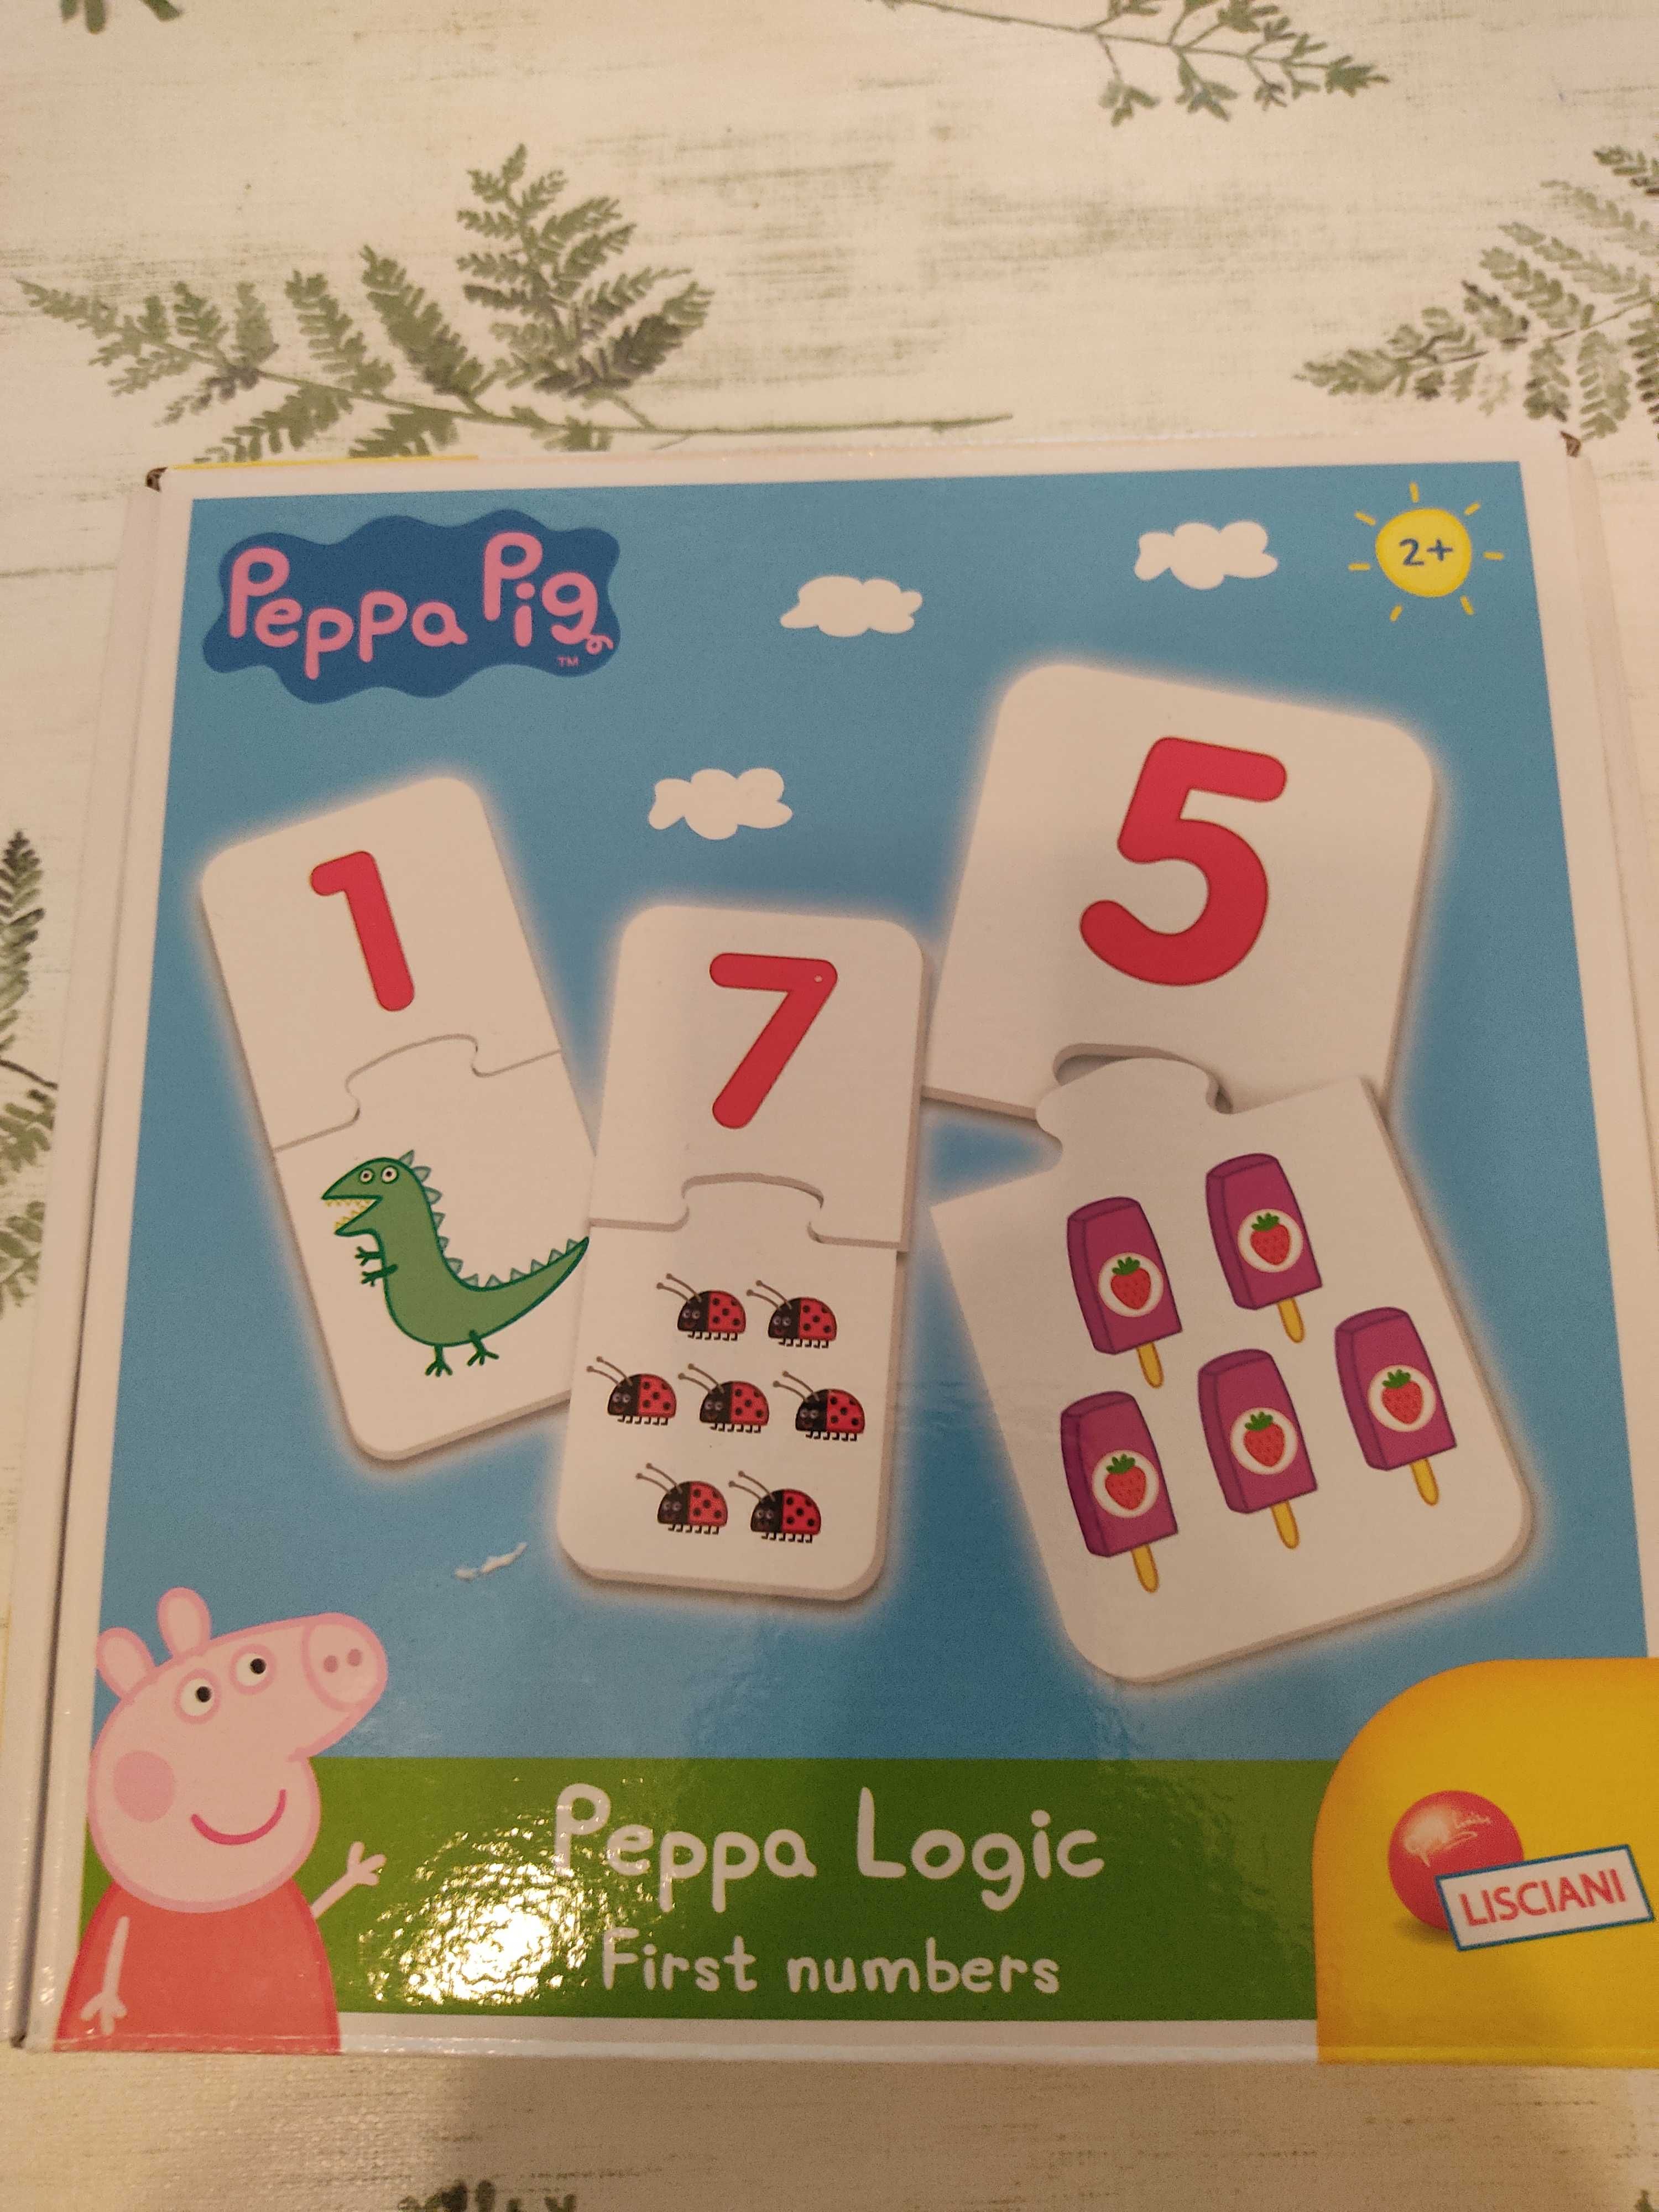 Gra logiczna dla dzieci Peppa Pig, liczenie